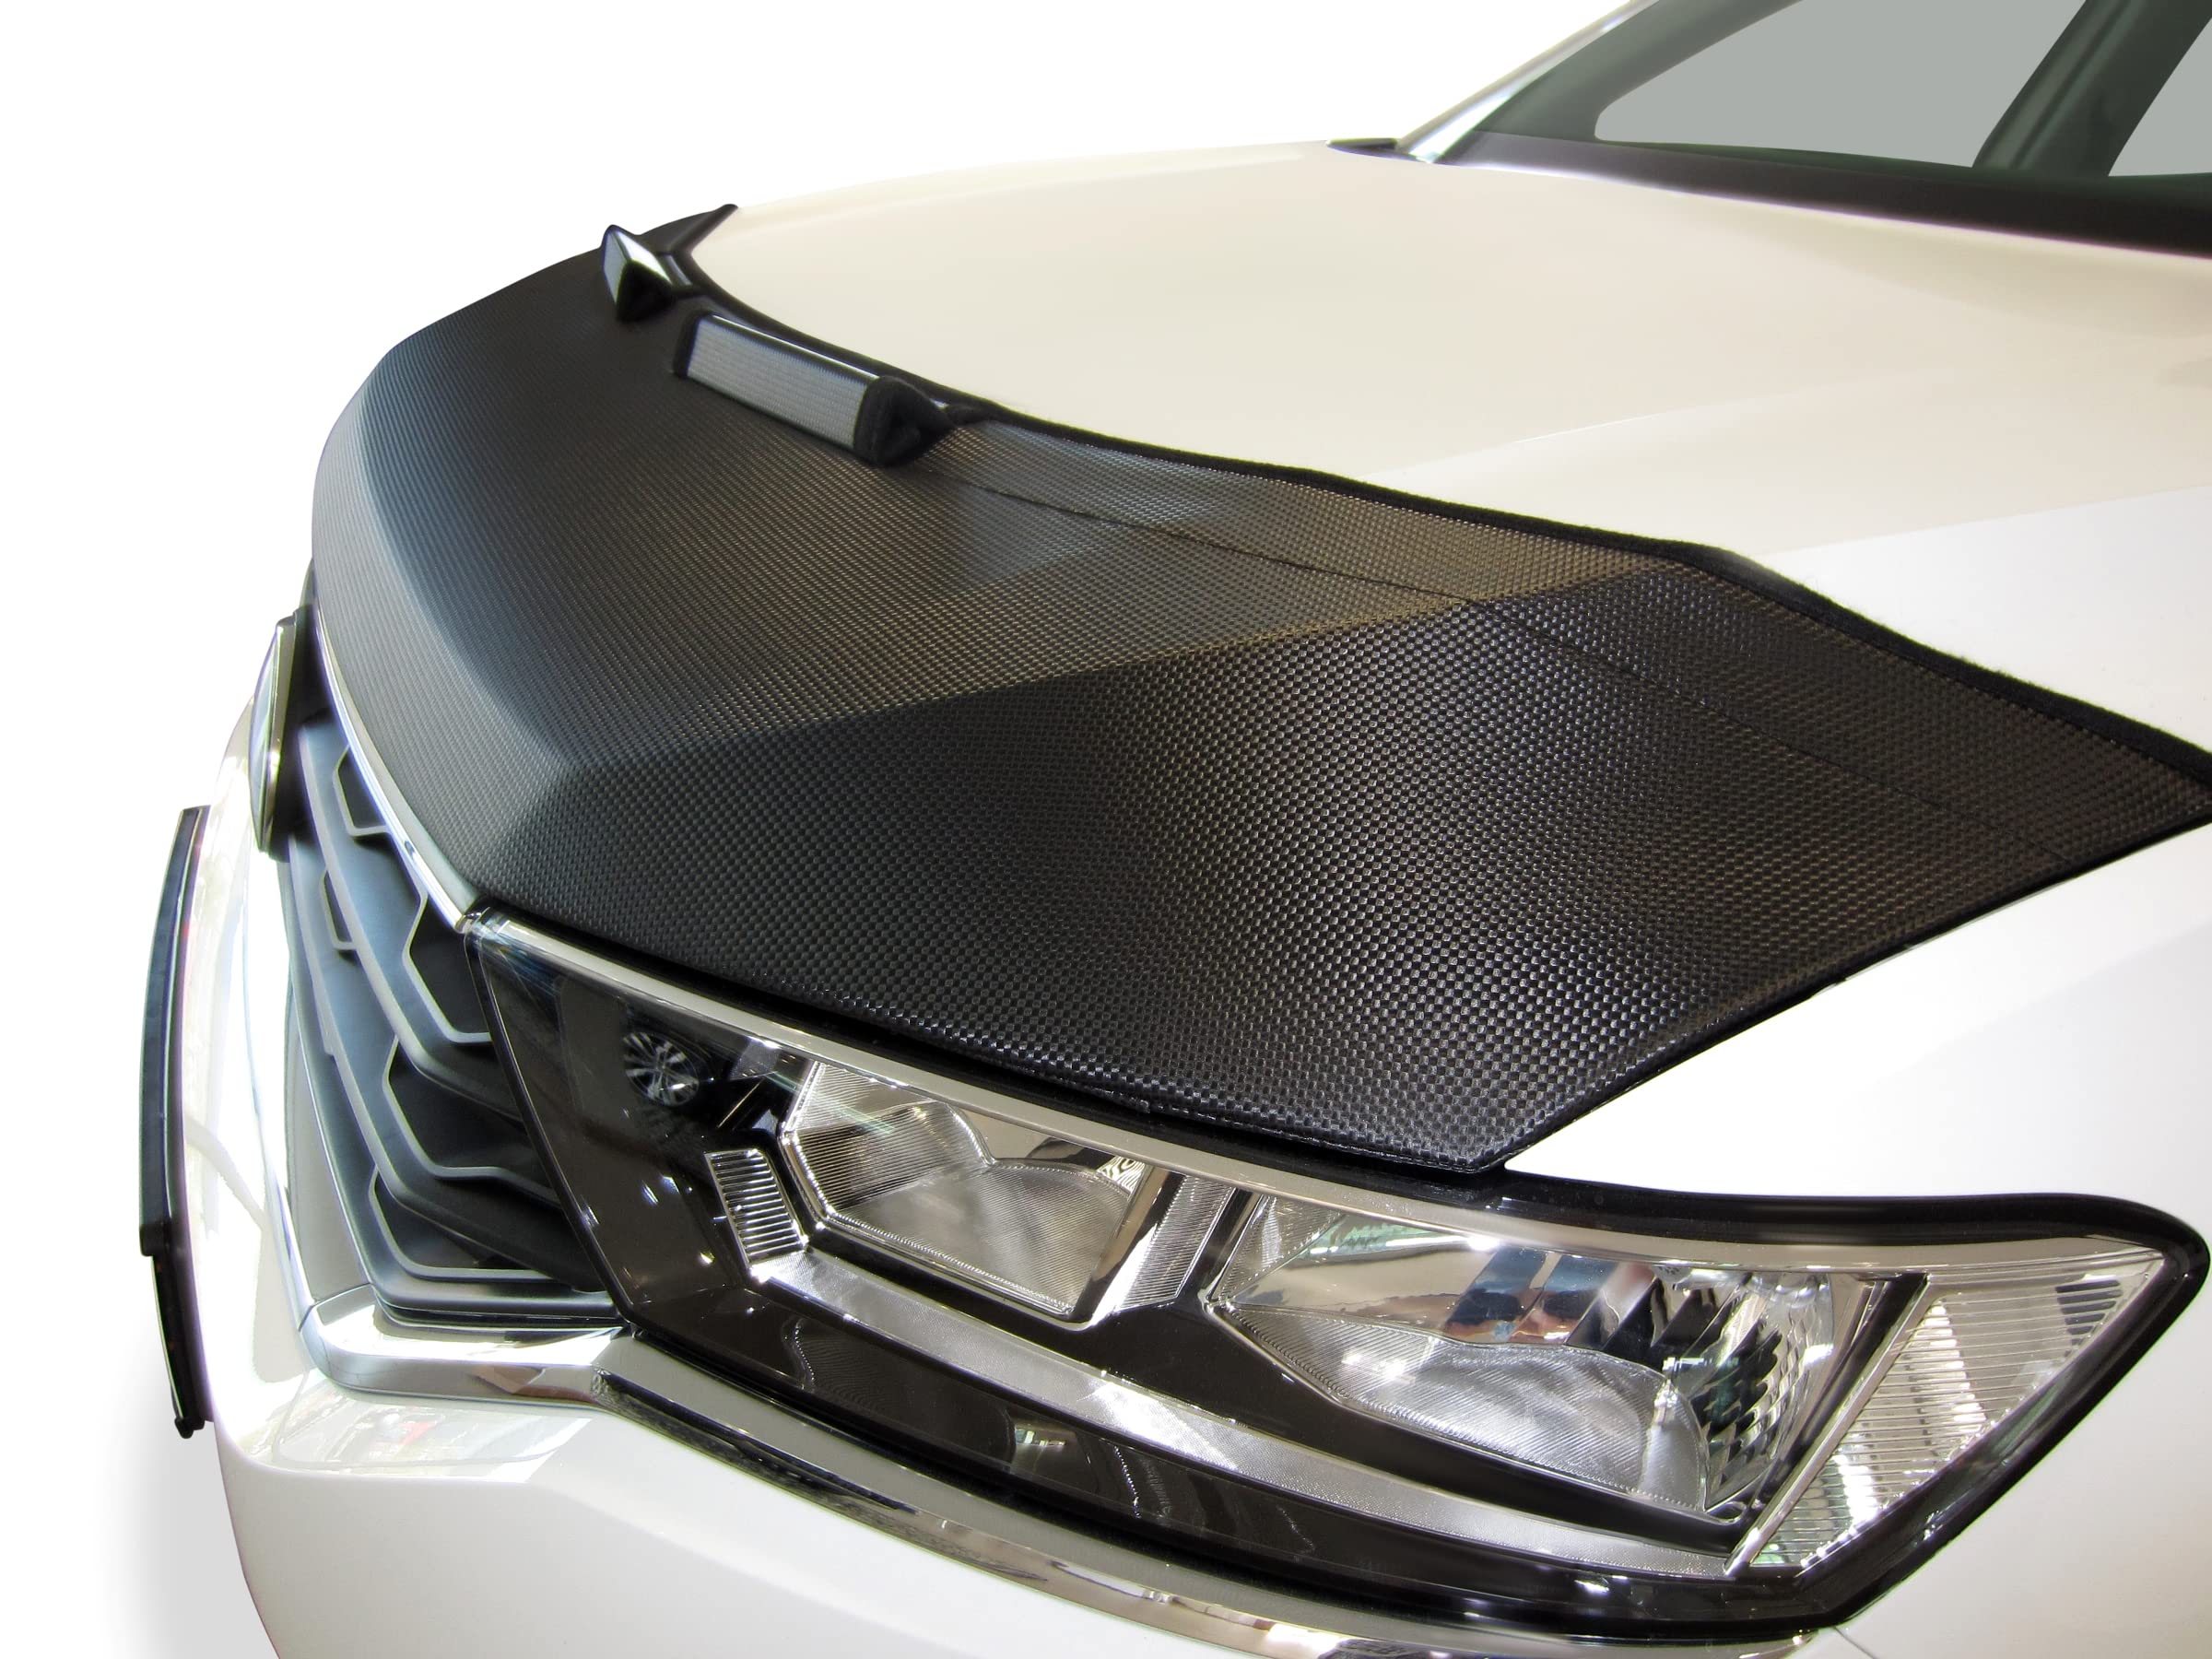 AB3-00033 Carbon Optik Auto Bra kompatibel mit Suzuki Ignis Bj. seit 2016 Haubenbra Steinschlagschutz Tuning Bonnet Bra